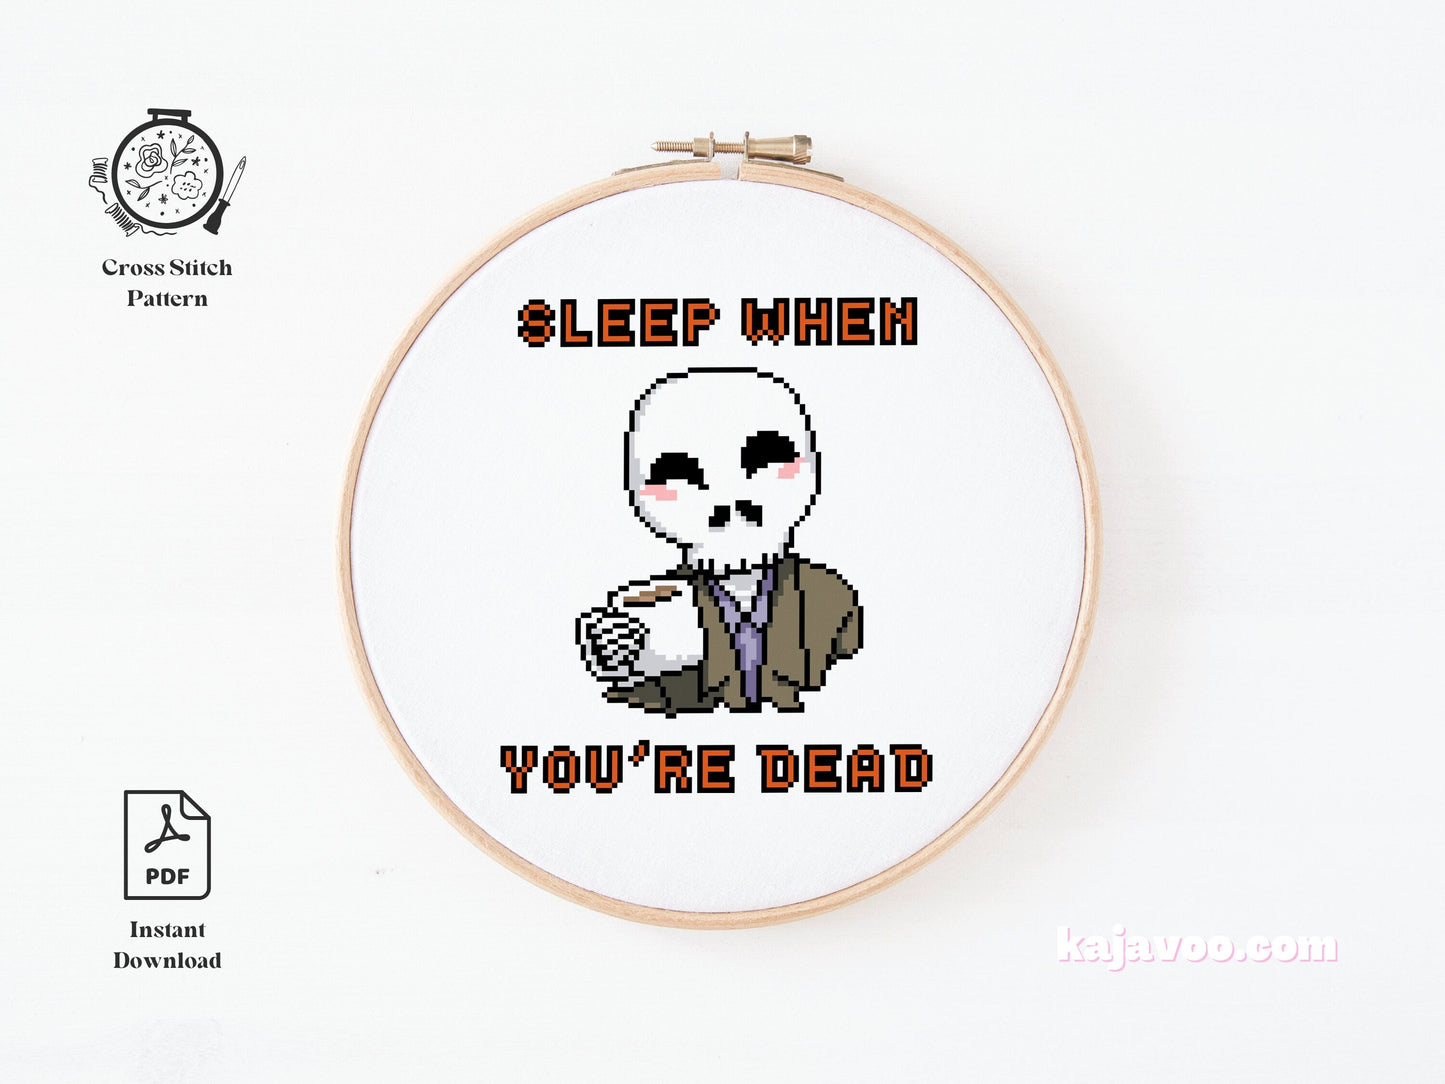 Sleep When You're Dead